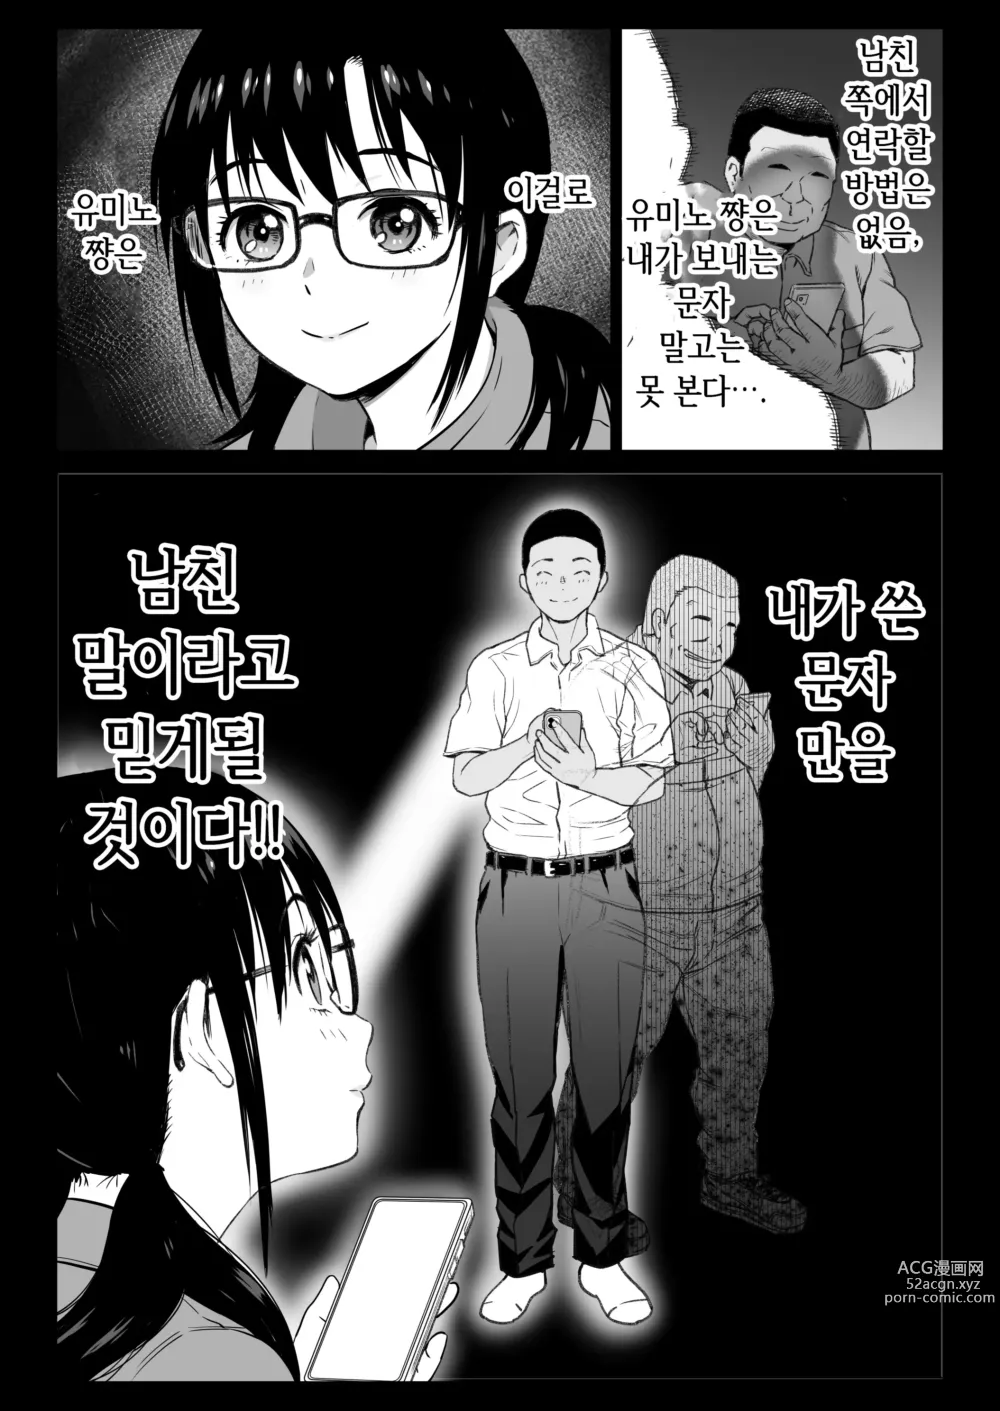 Page 9 of doujinshi 남친있는 알바생 유미노 쨩을 오늘도 점장은 노리고 있다